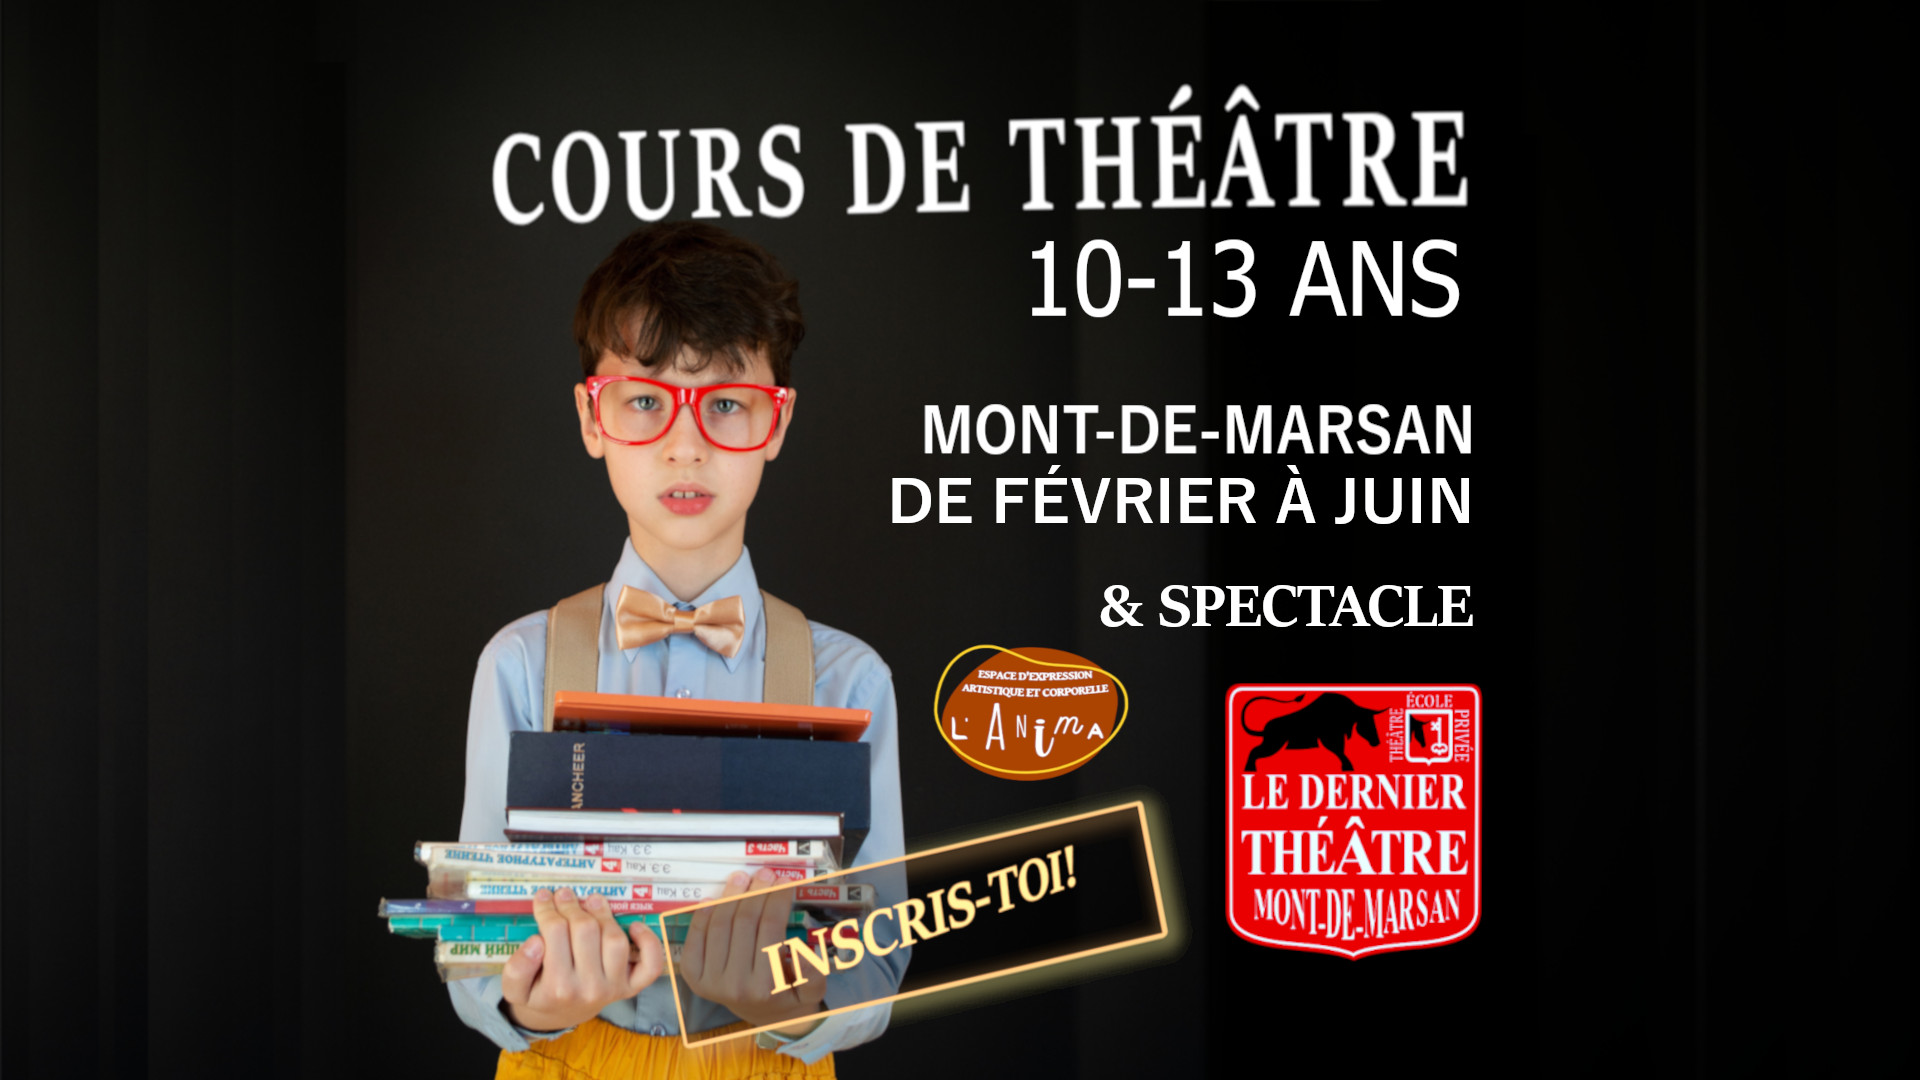 Le dernier théâtre - École privée art Dramatique - Cours Jeunes 10 13 ans semestre B